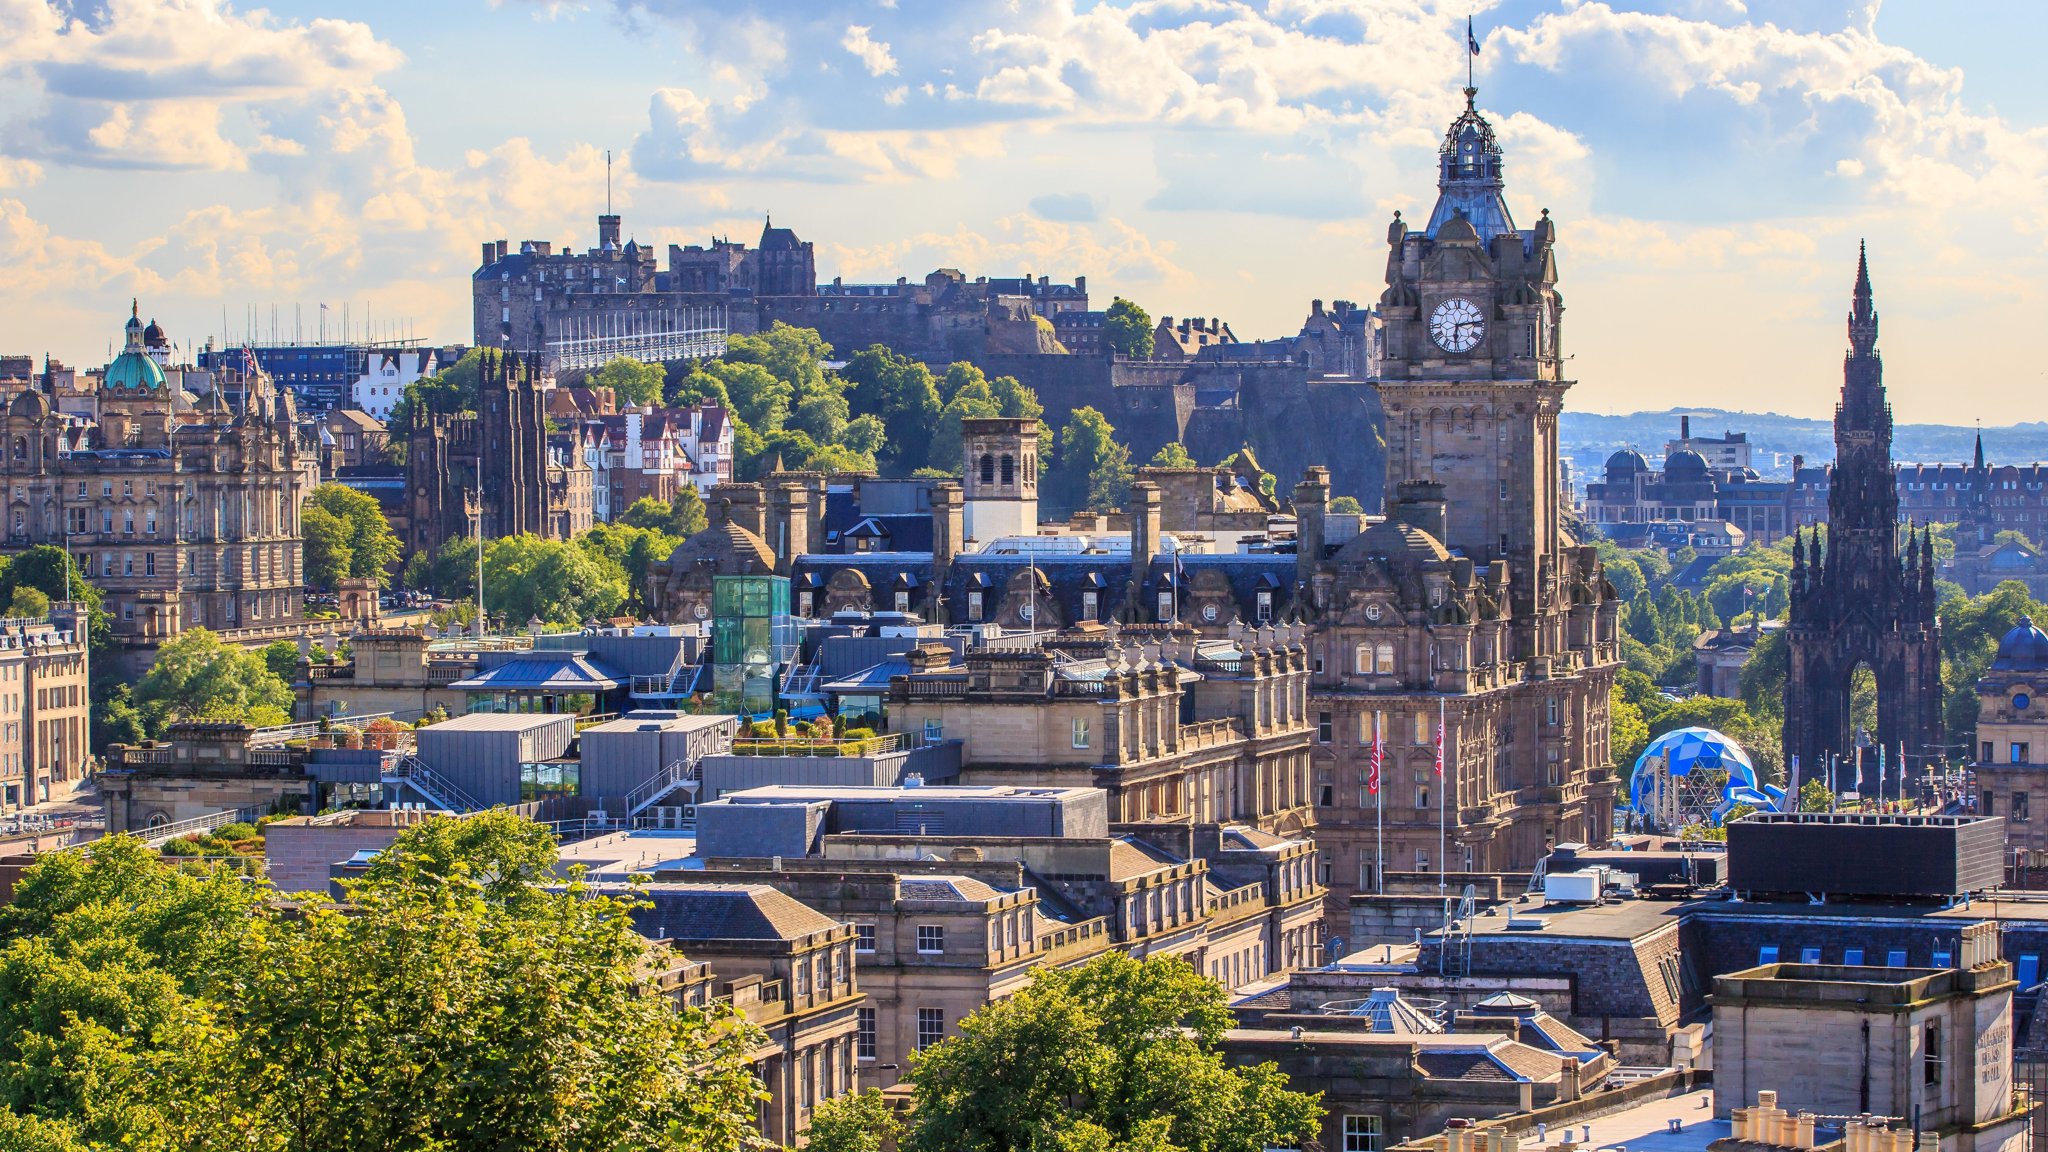 Khám phá Edinburgh - Thành phố Edinburgh